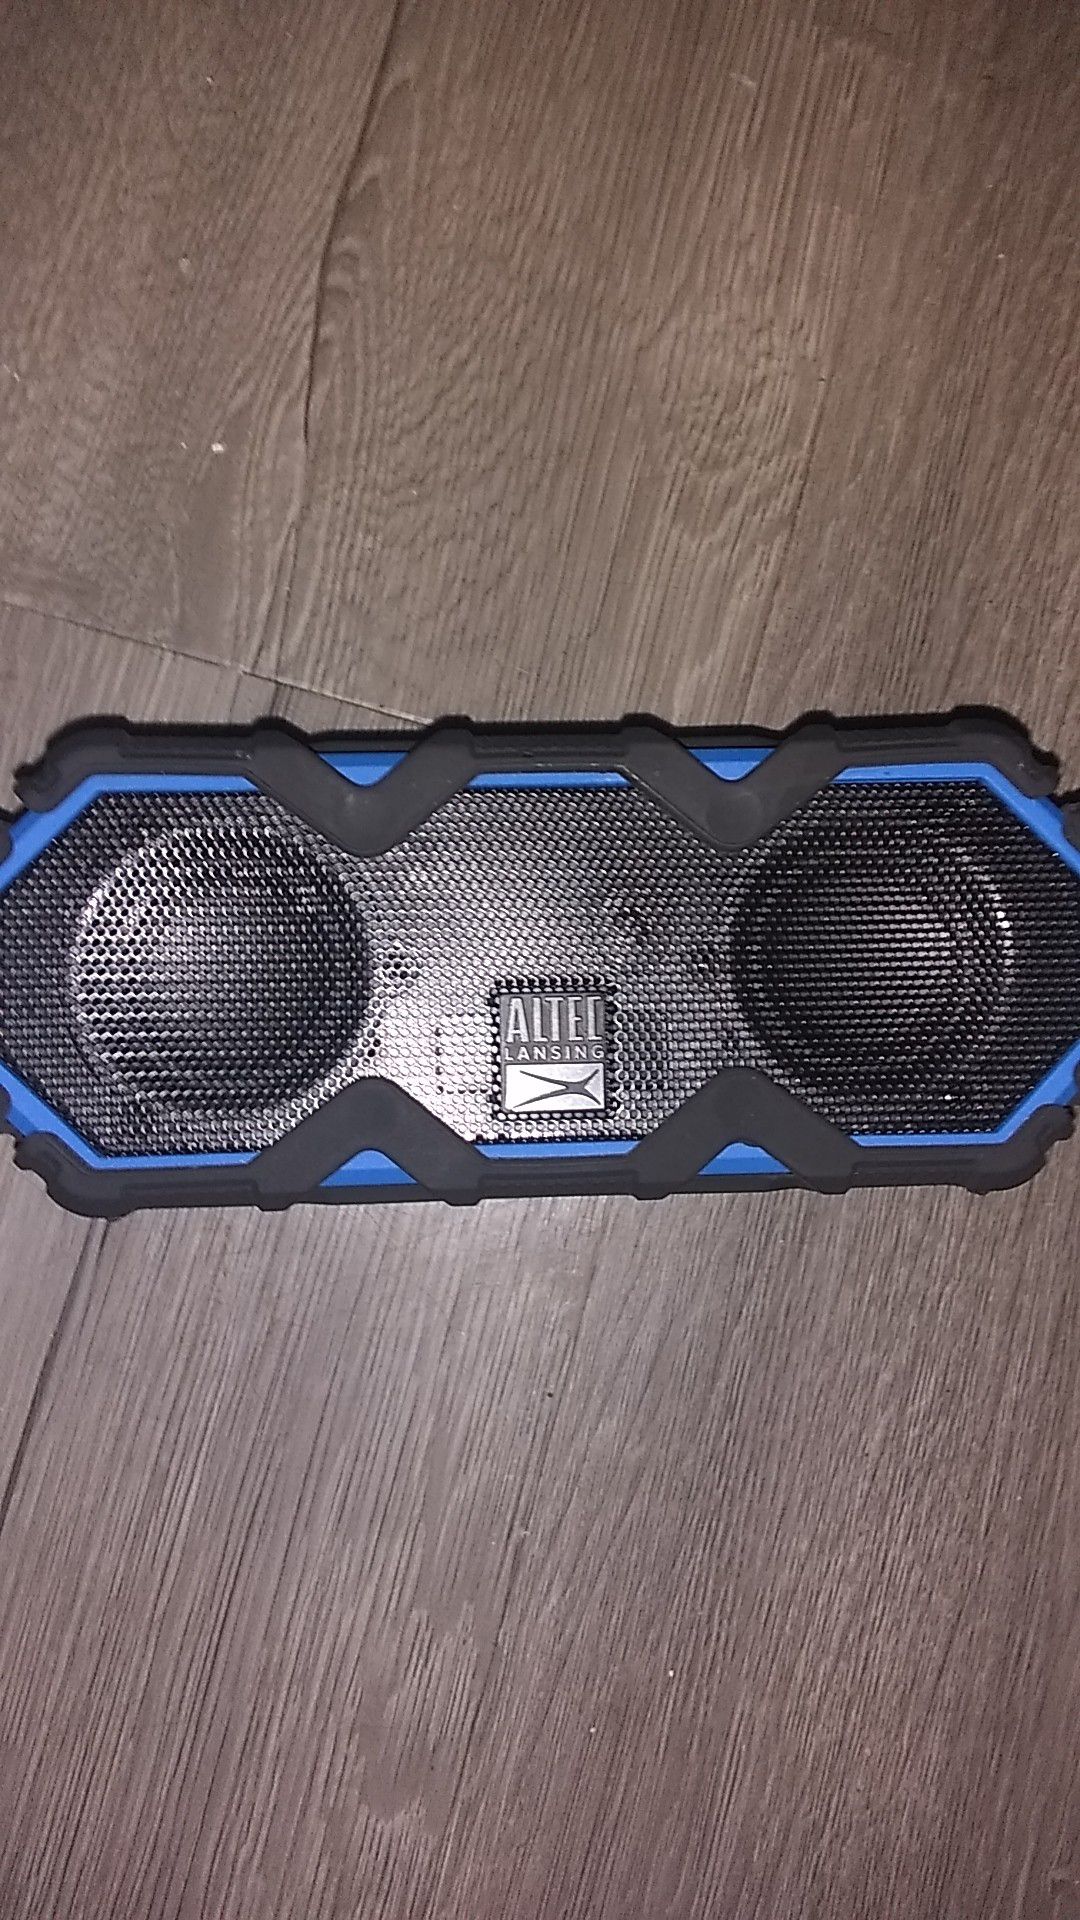 Altec Lansing waterproof speaker